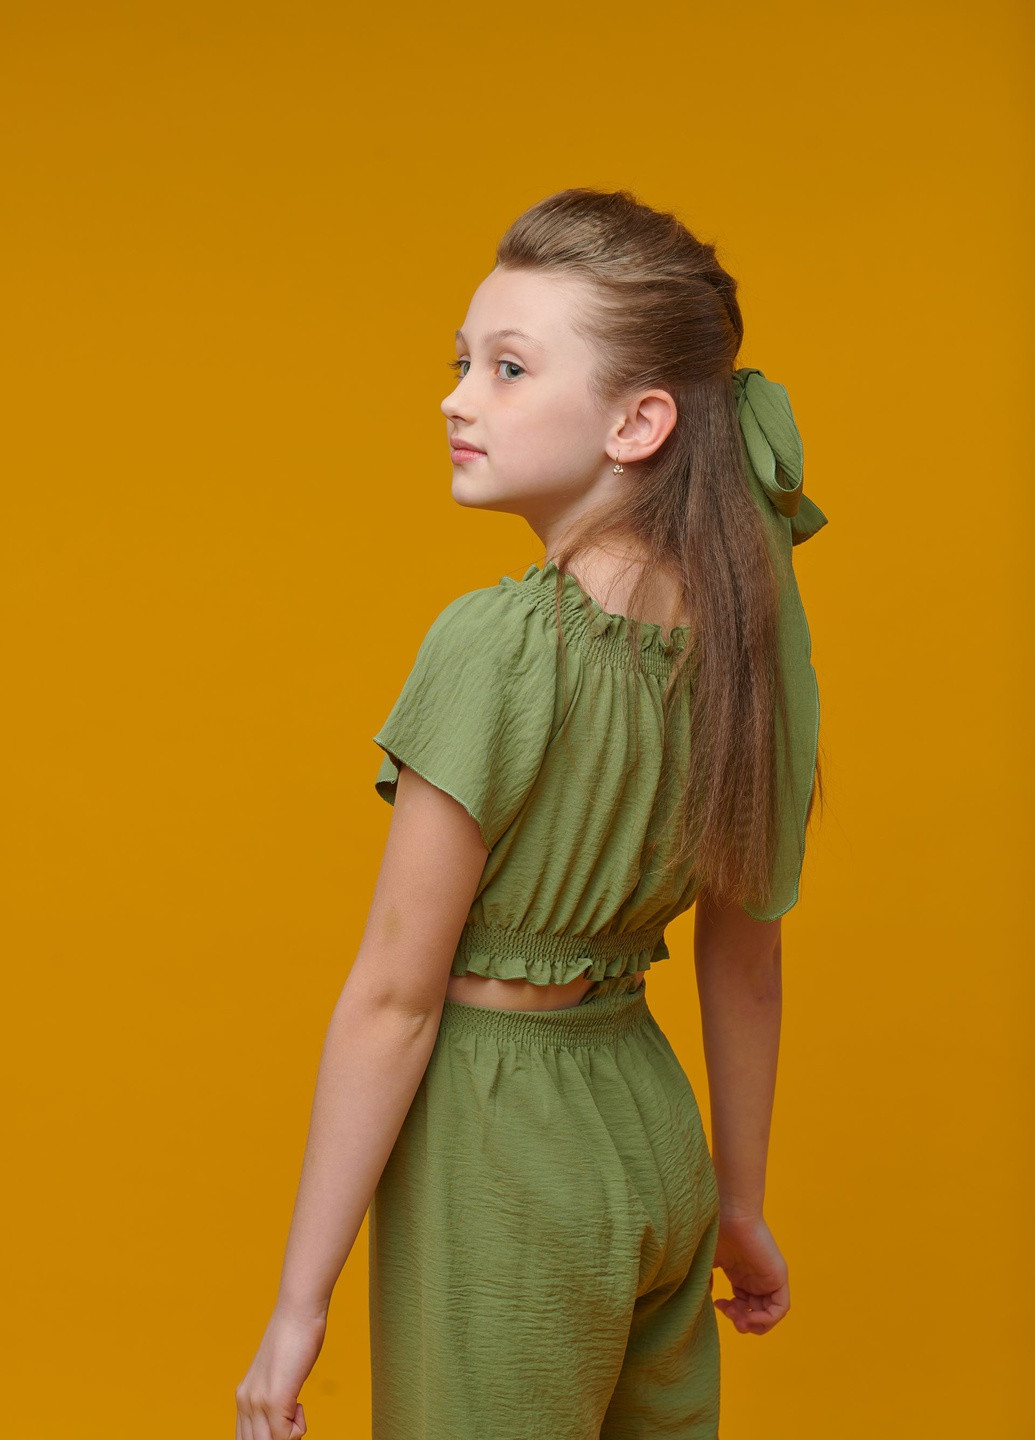 Оливковый летний костюм брючный (топ+брюки) для девочки оливковый брючный Yumster